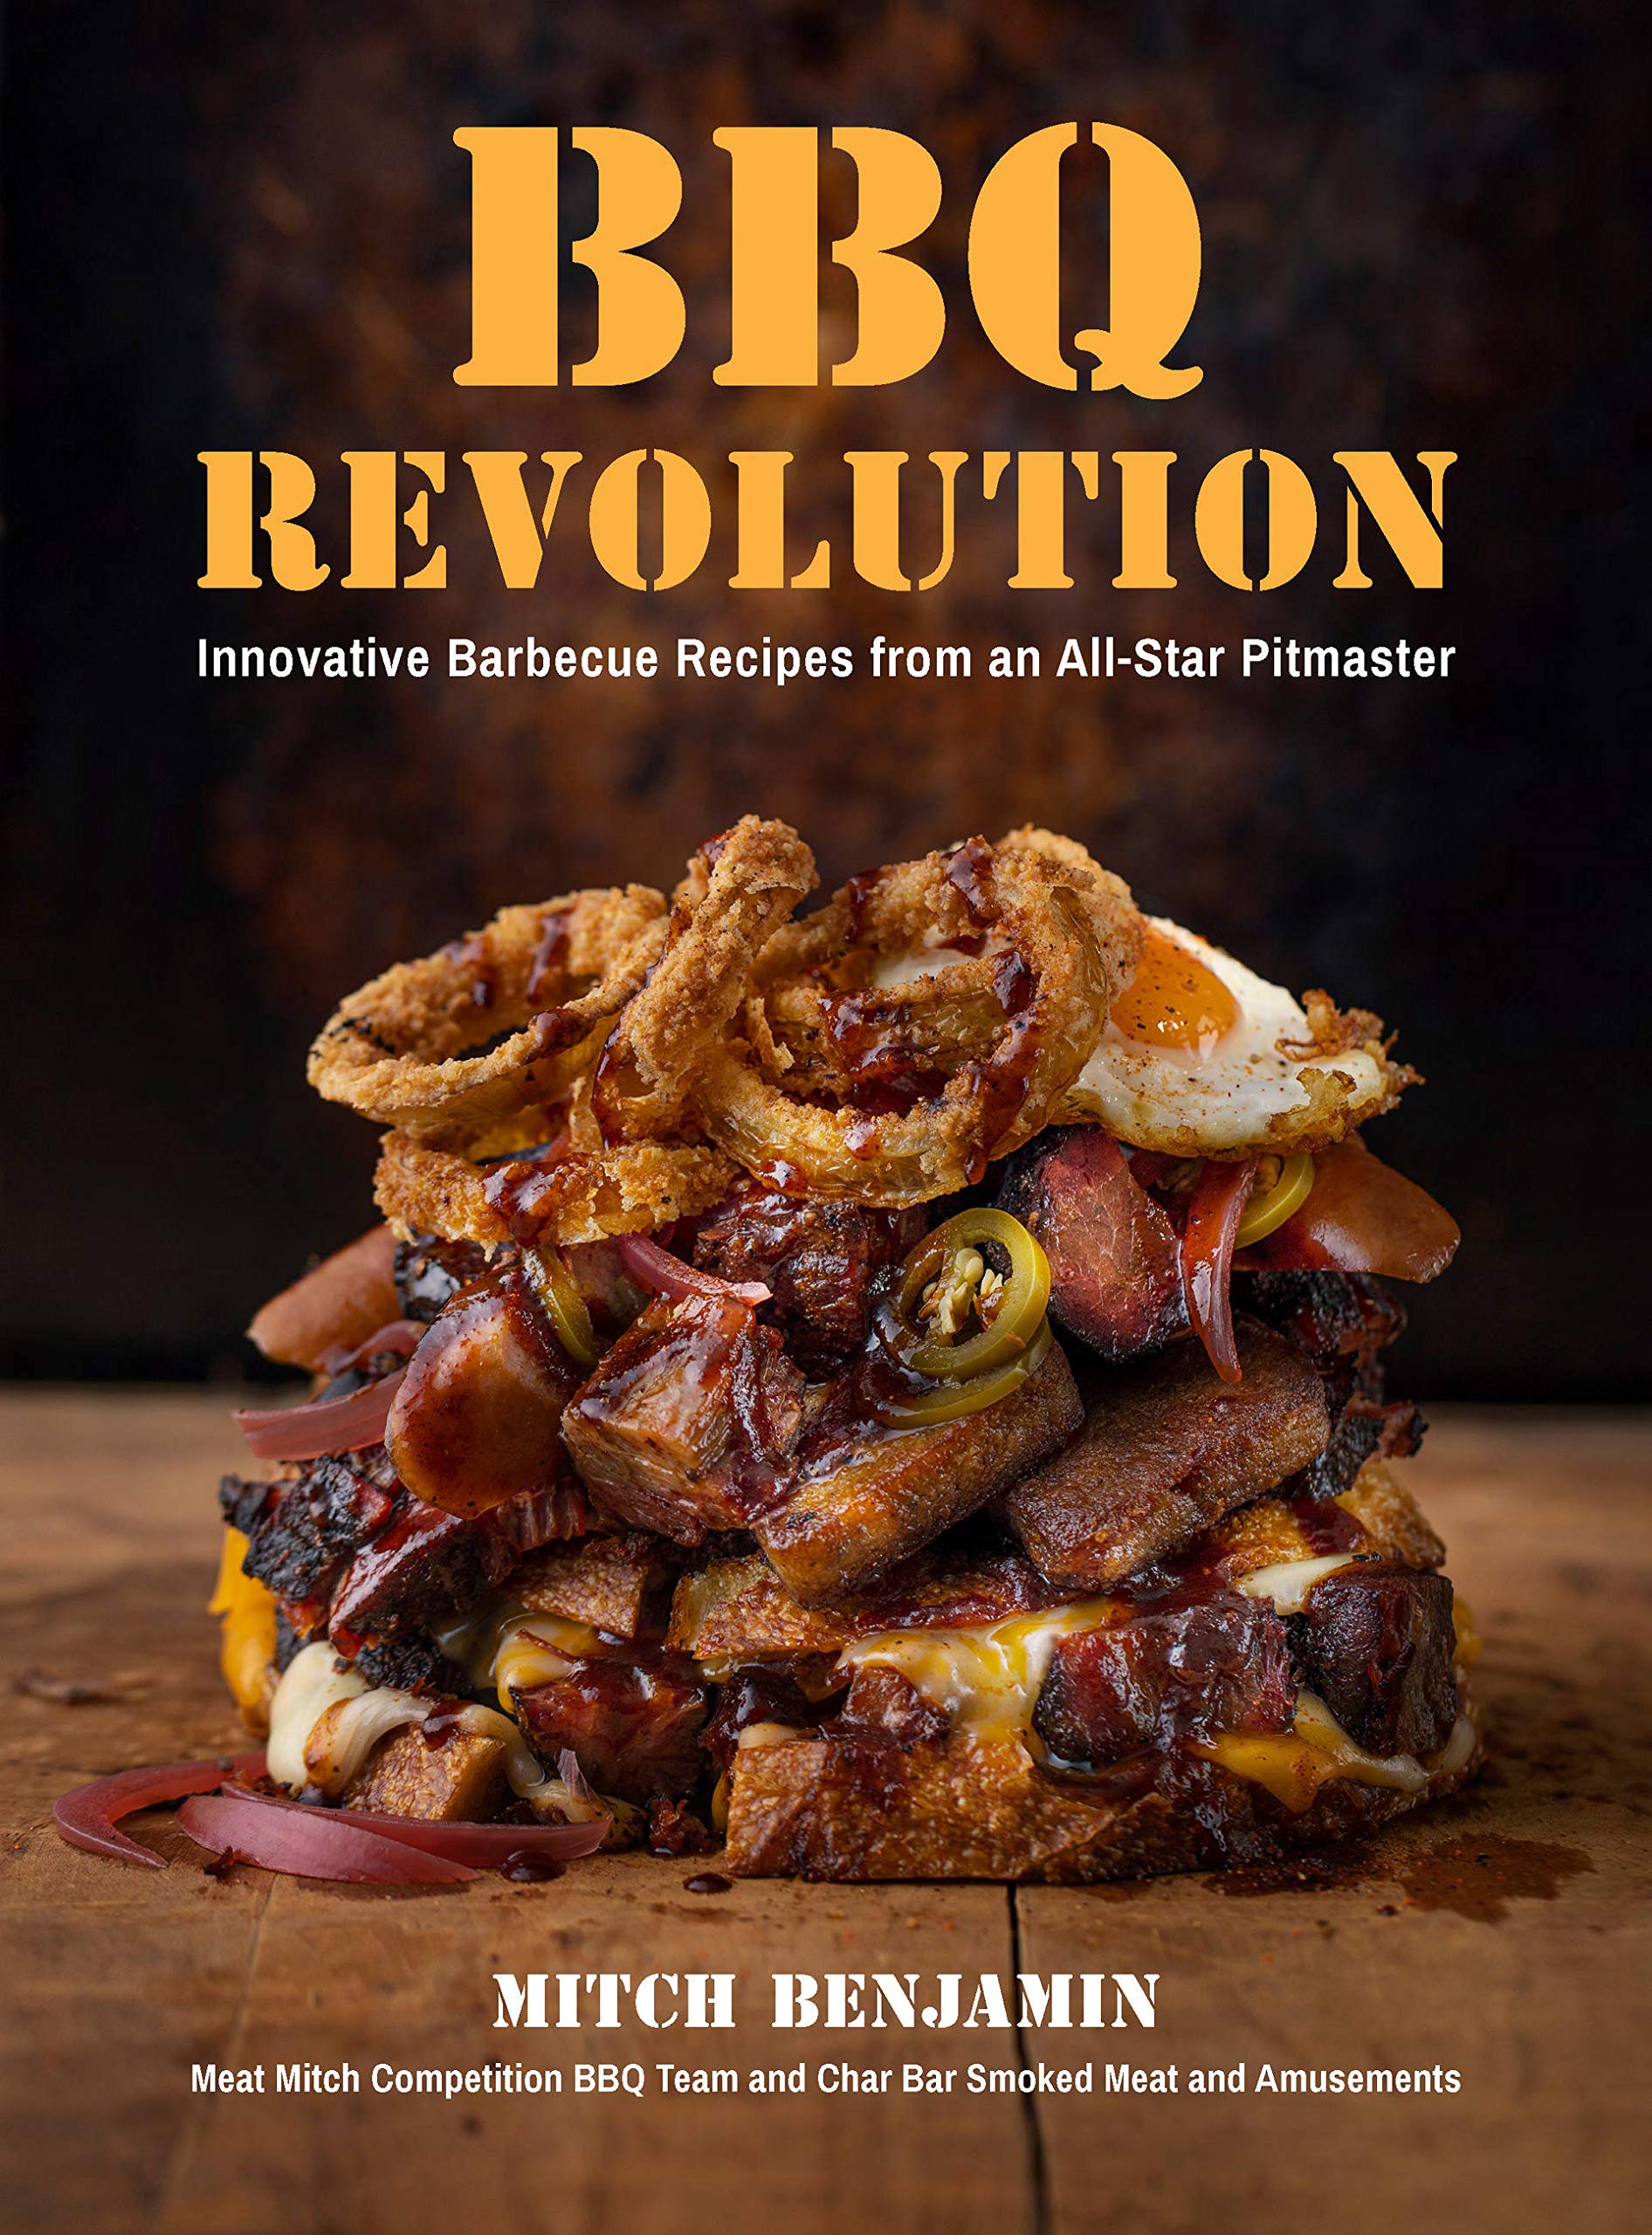 V Revolution - Food Menu